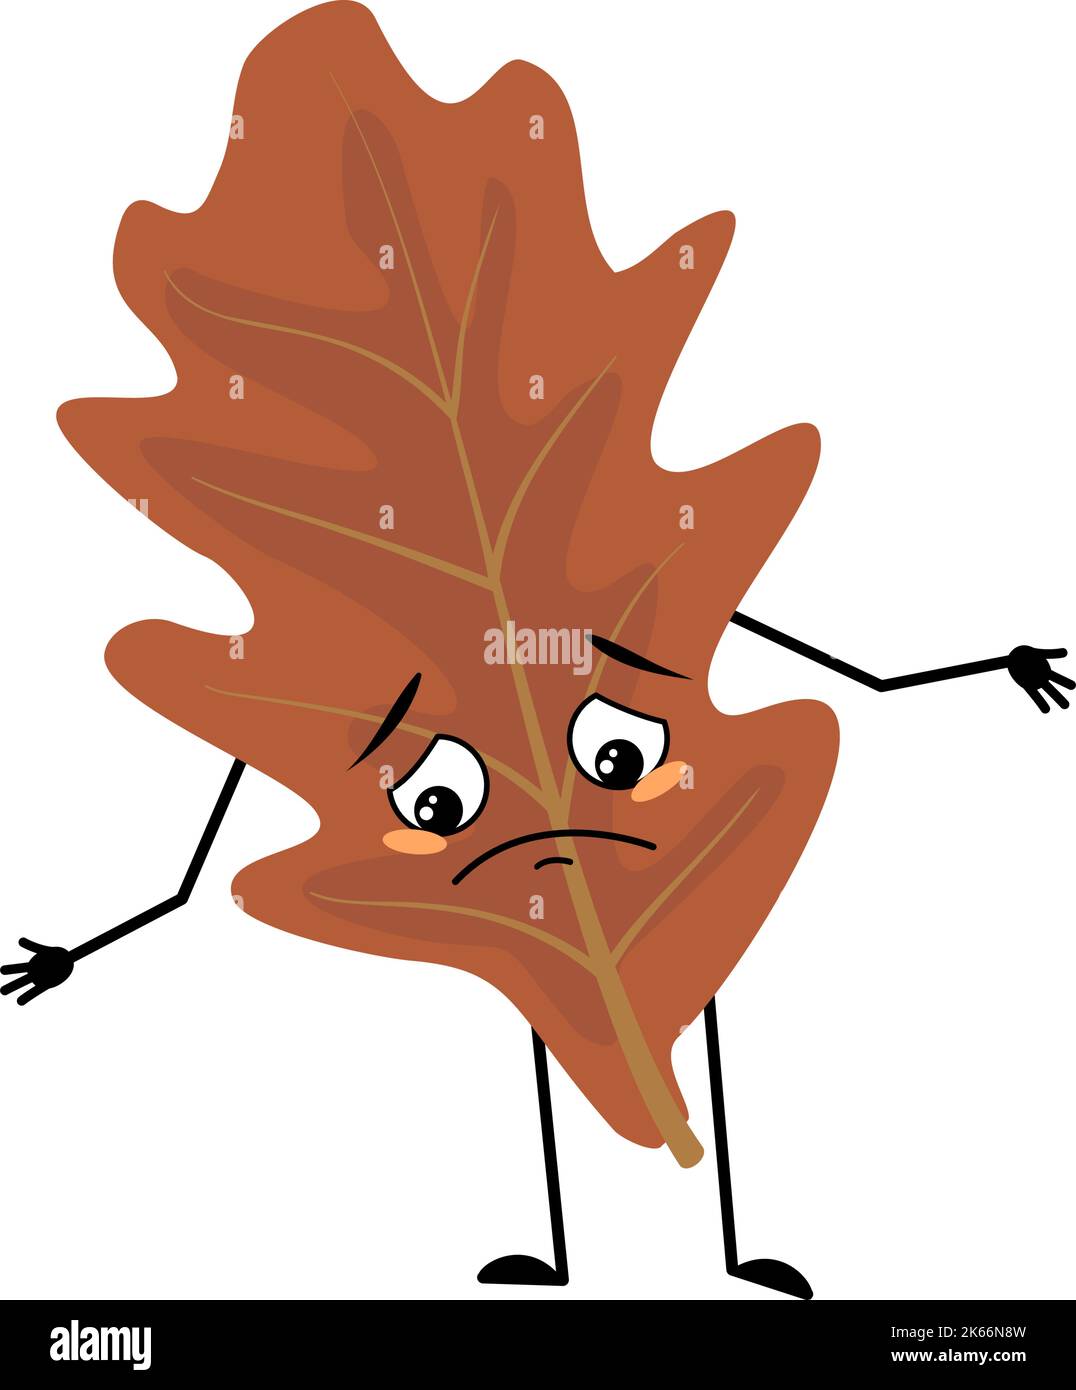 Eichenblatt-Charakter mit traurigen Emotionen, deprimiertem Gesicht, Augen, Armen und Beinen. Waldpflanze im Herbst braune Farbe. Vektorgrafik flach Stock Vektor